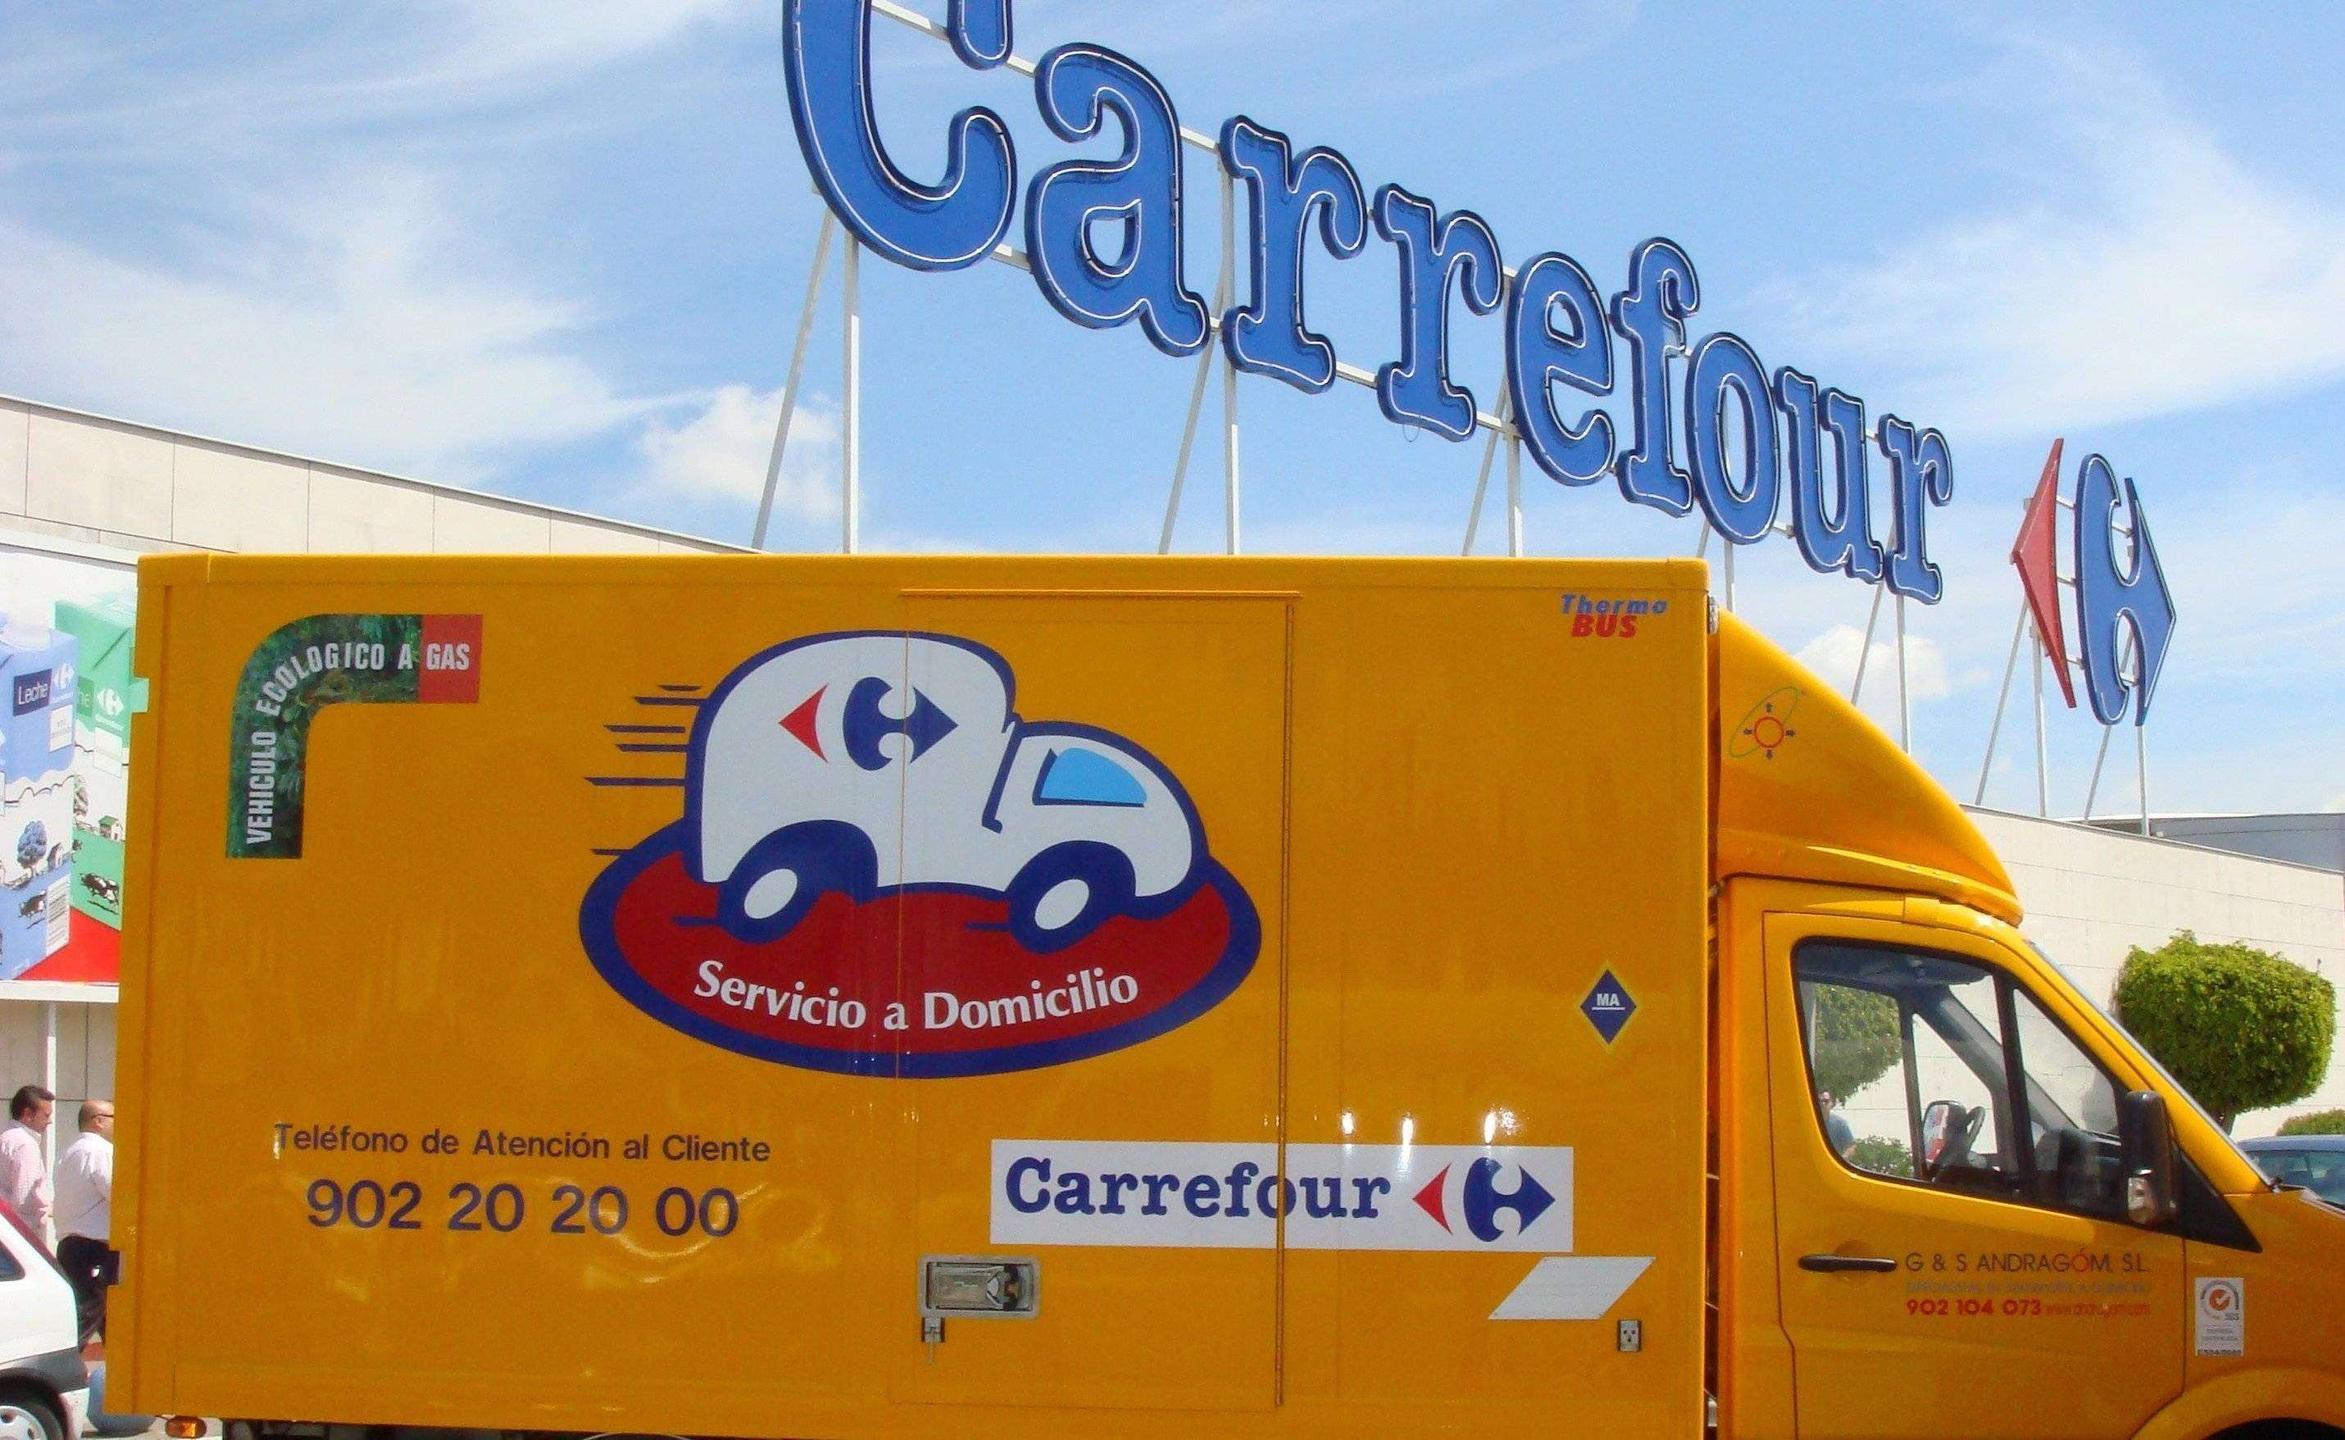 Carrefour no reparta en domicilios sin ascensor